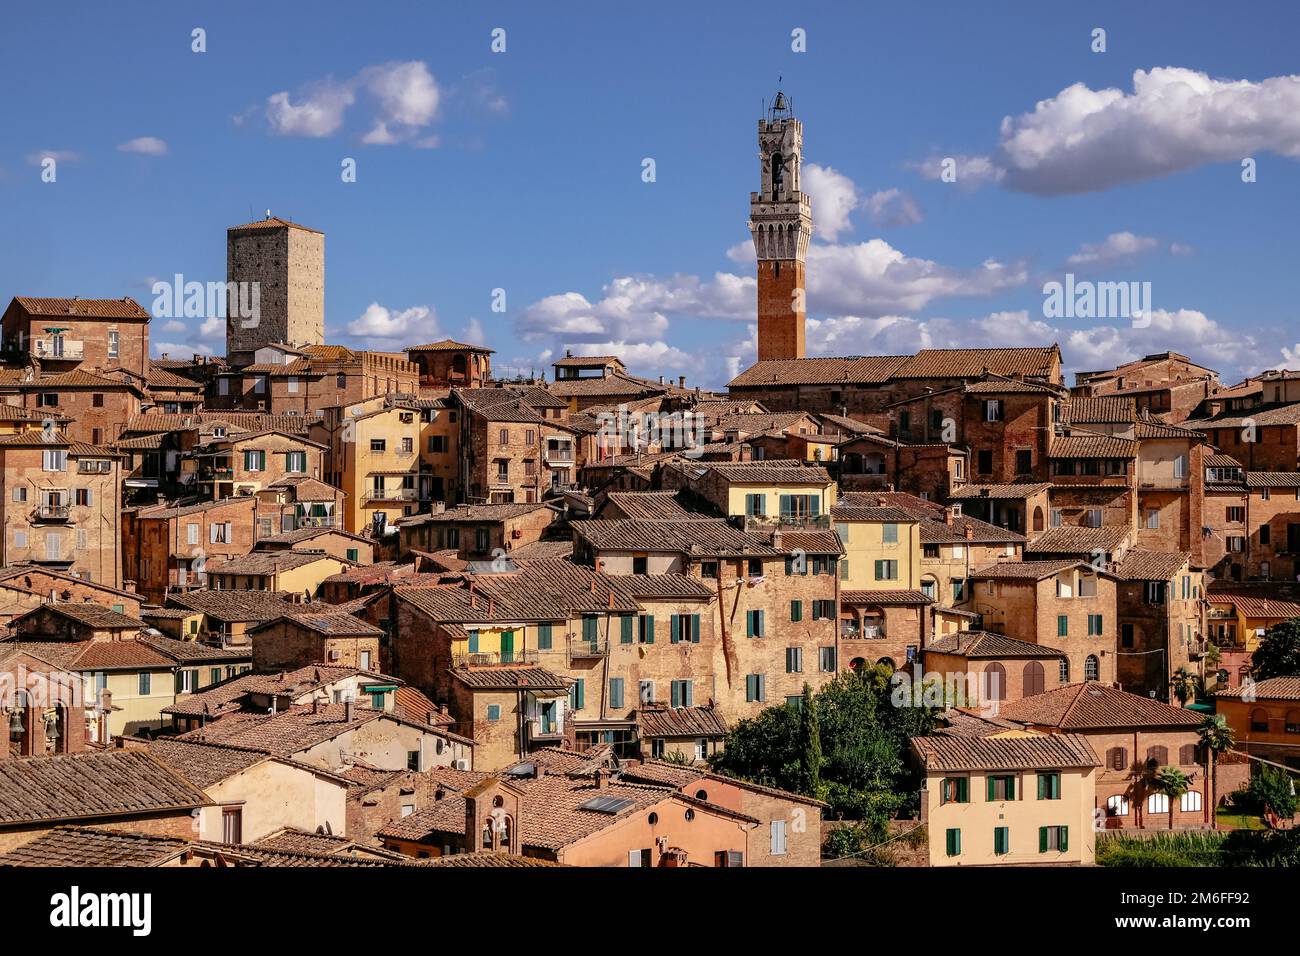 Vue panoramique de Sienne avec toits carrelés, Duomo et Torre del Mangia - Toscane, Italie Banque D'Images